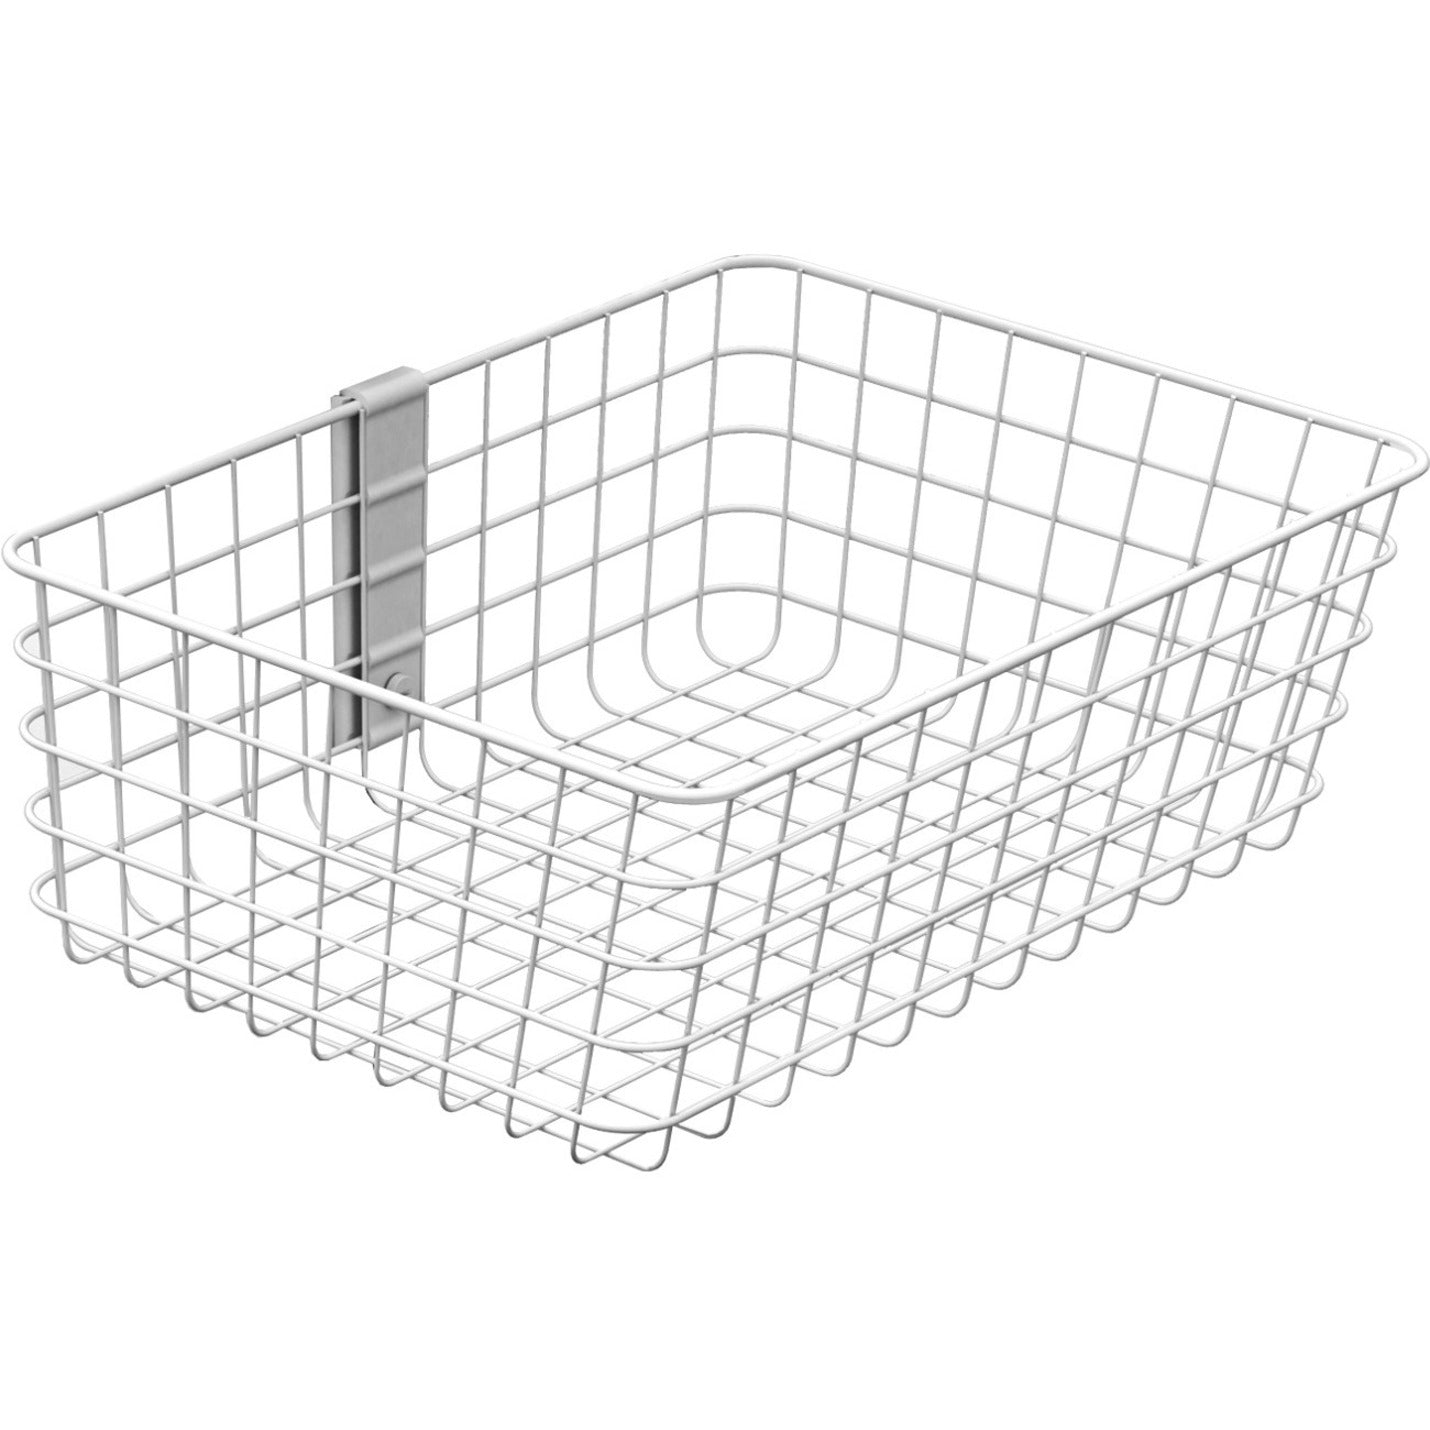 Ergotron 98-135-216 SV Wire Basket, Large, White, 5 lb Maximum Weight Capacity